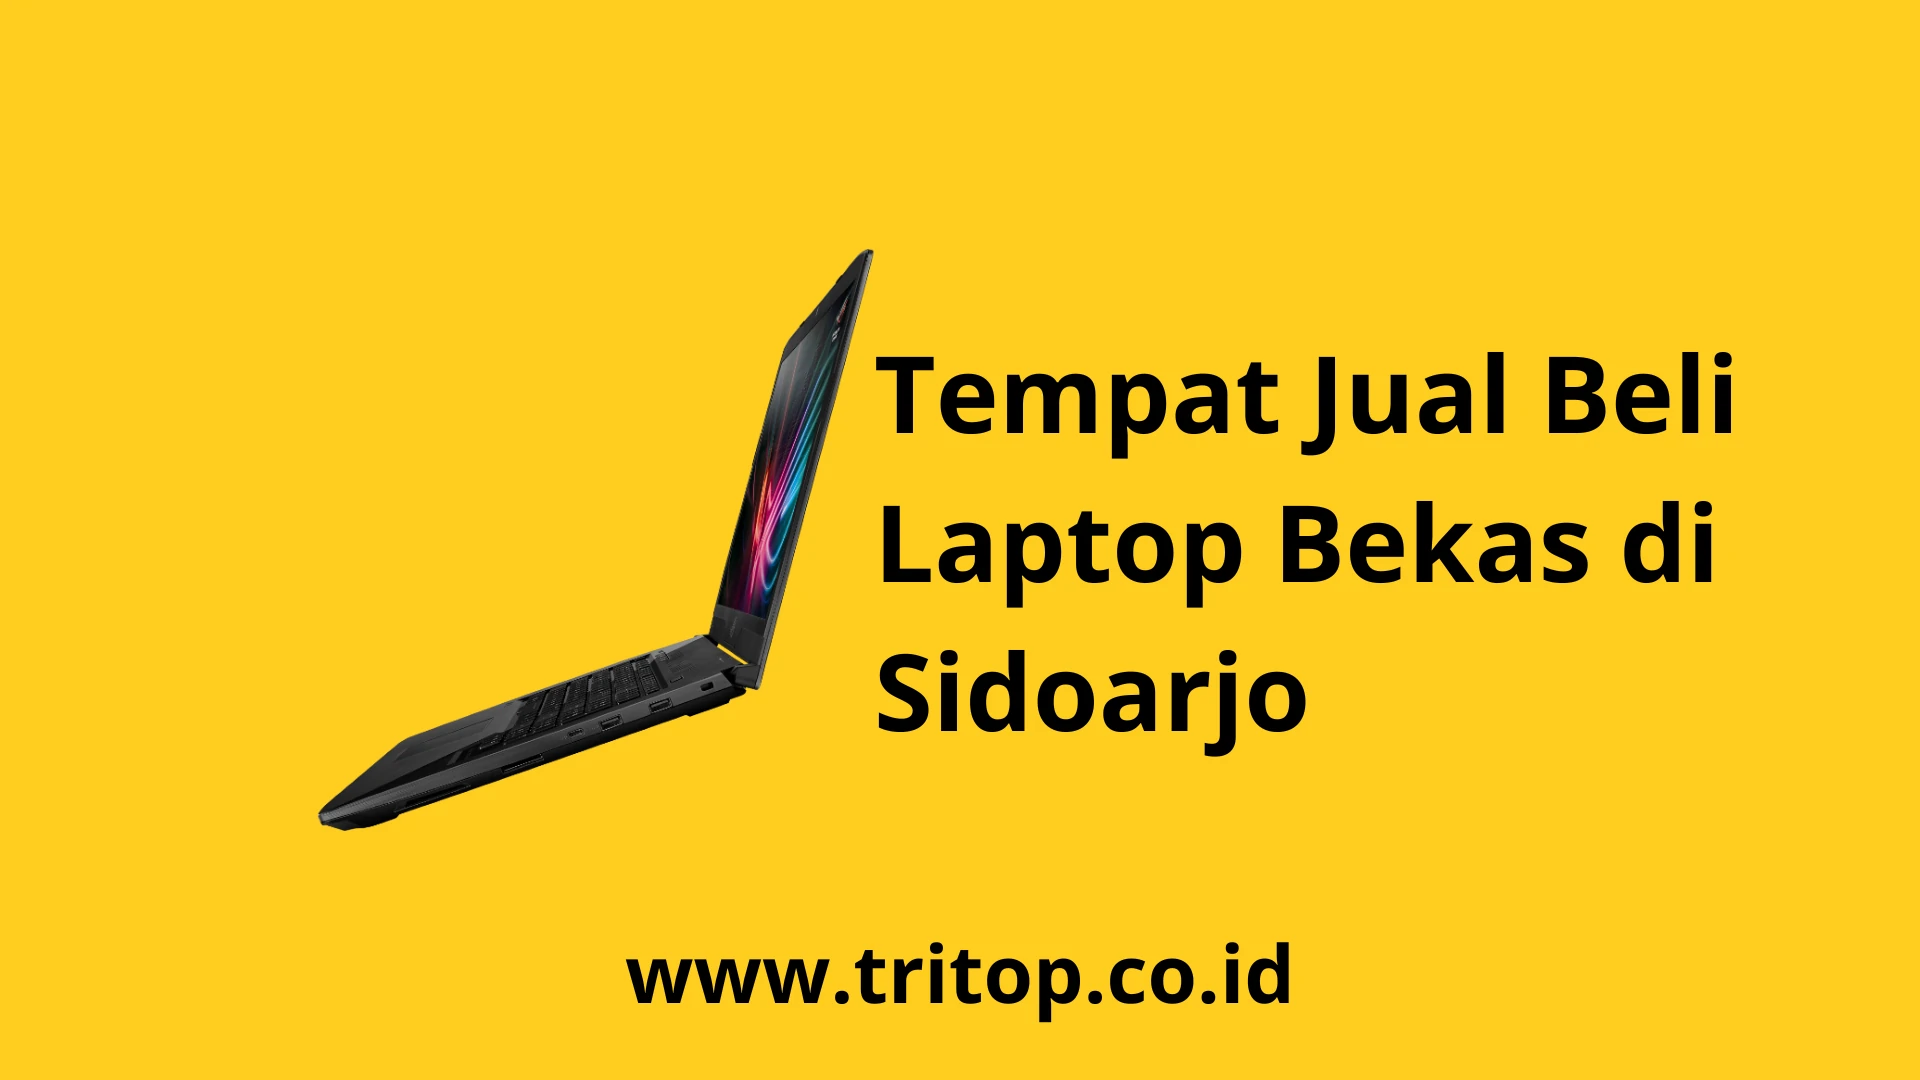 Terima Laptop Bekas Sidoarjo Tritop.co.id